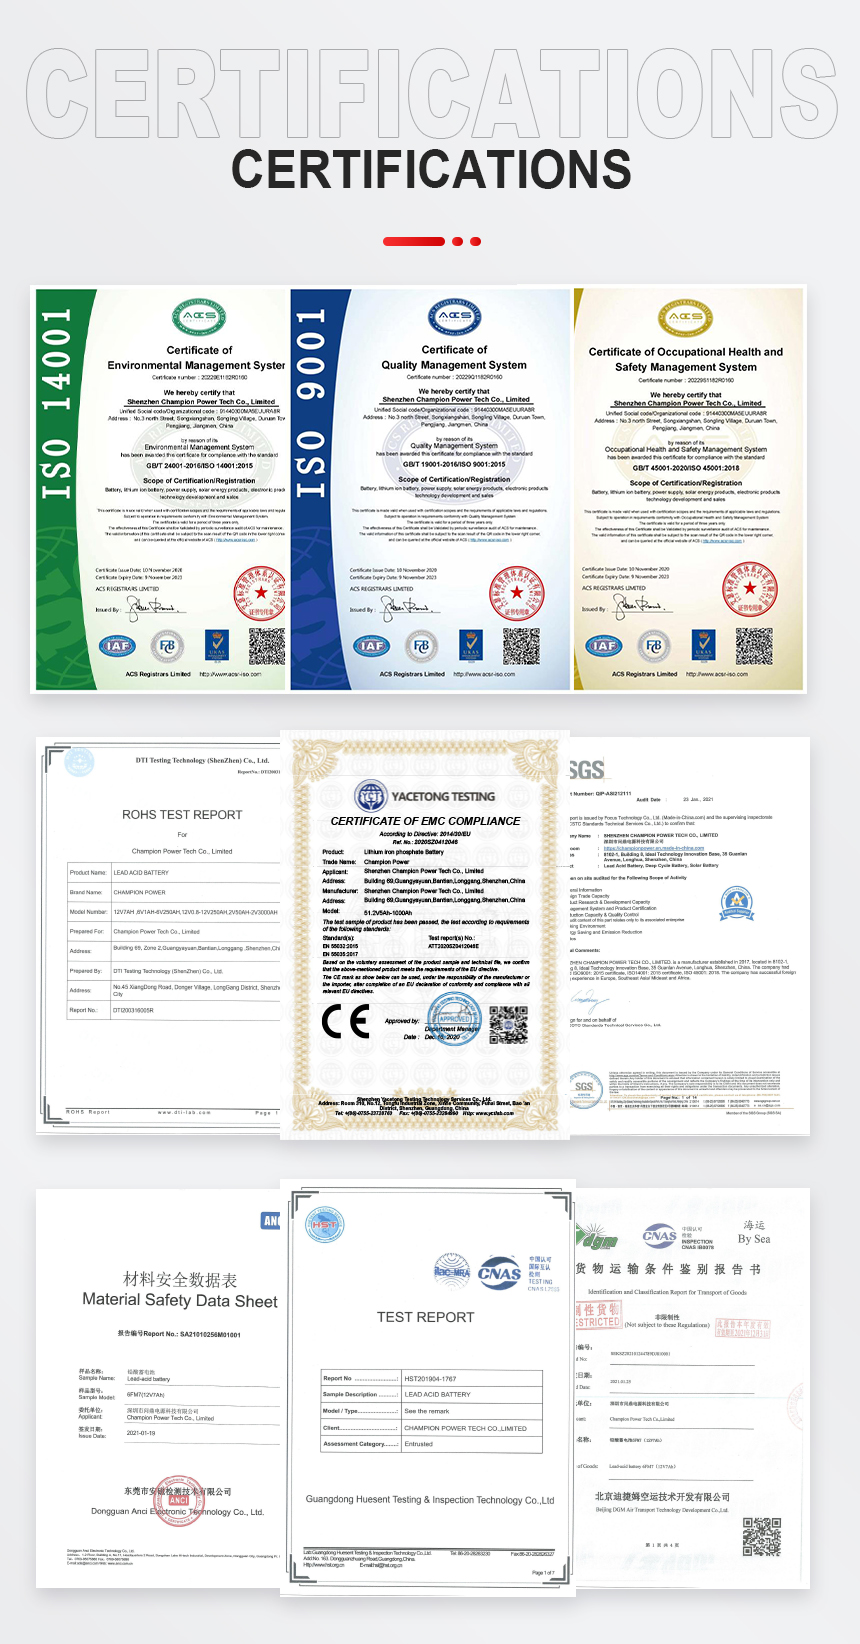 GFM300 Certifications